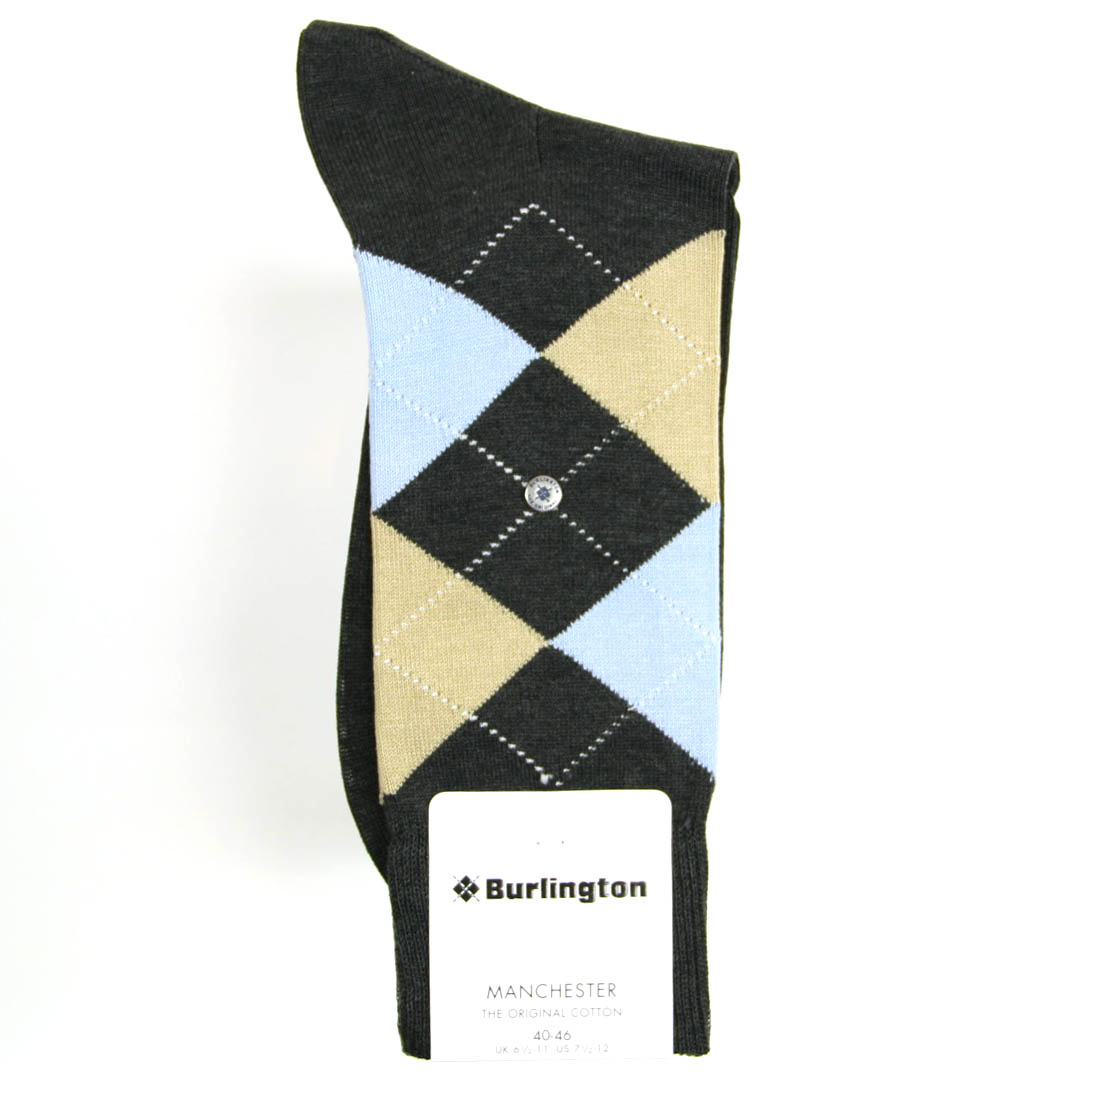 Wirwar Lauw Lada Burlington sokken koop je eenvoudig online bij de Olsterhof in Olst